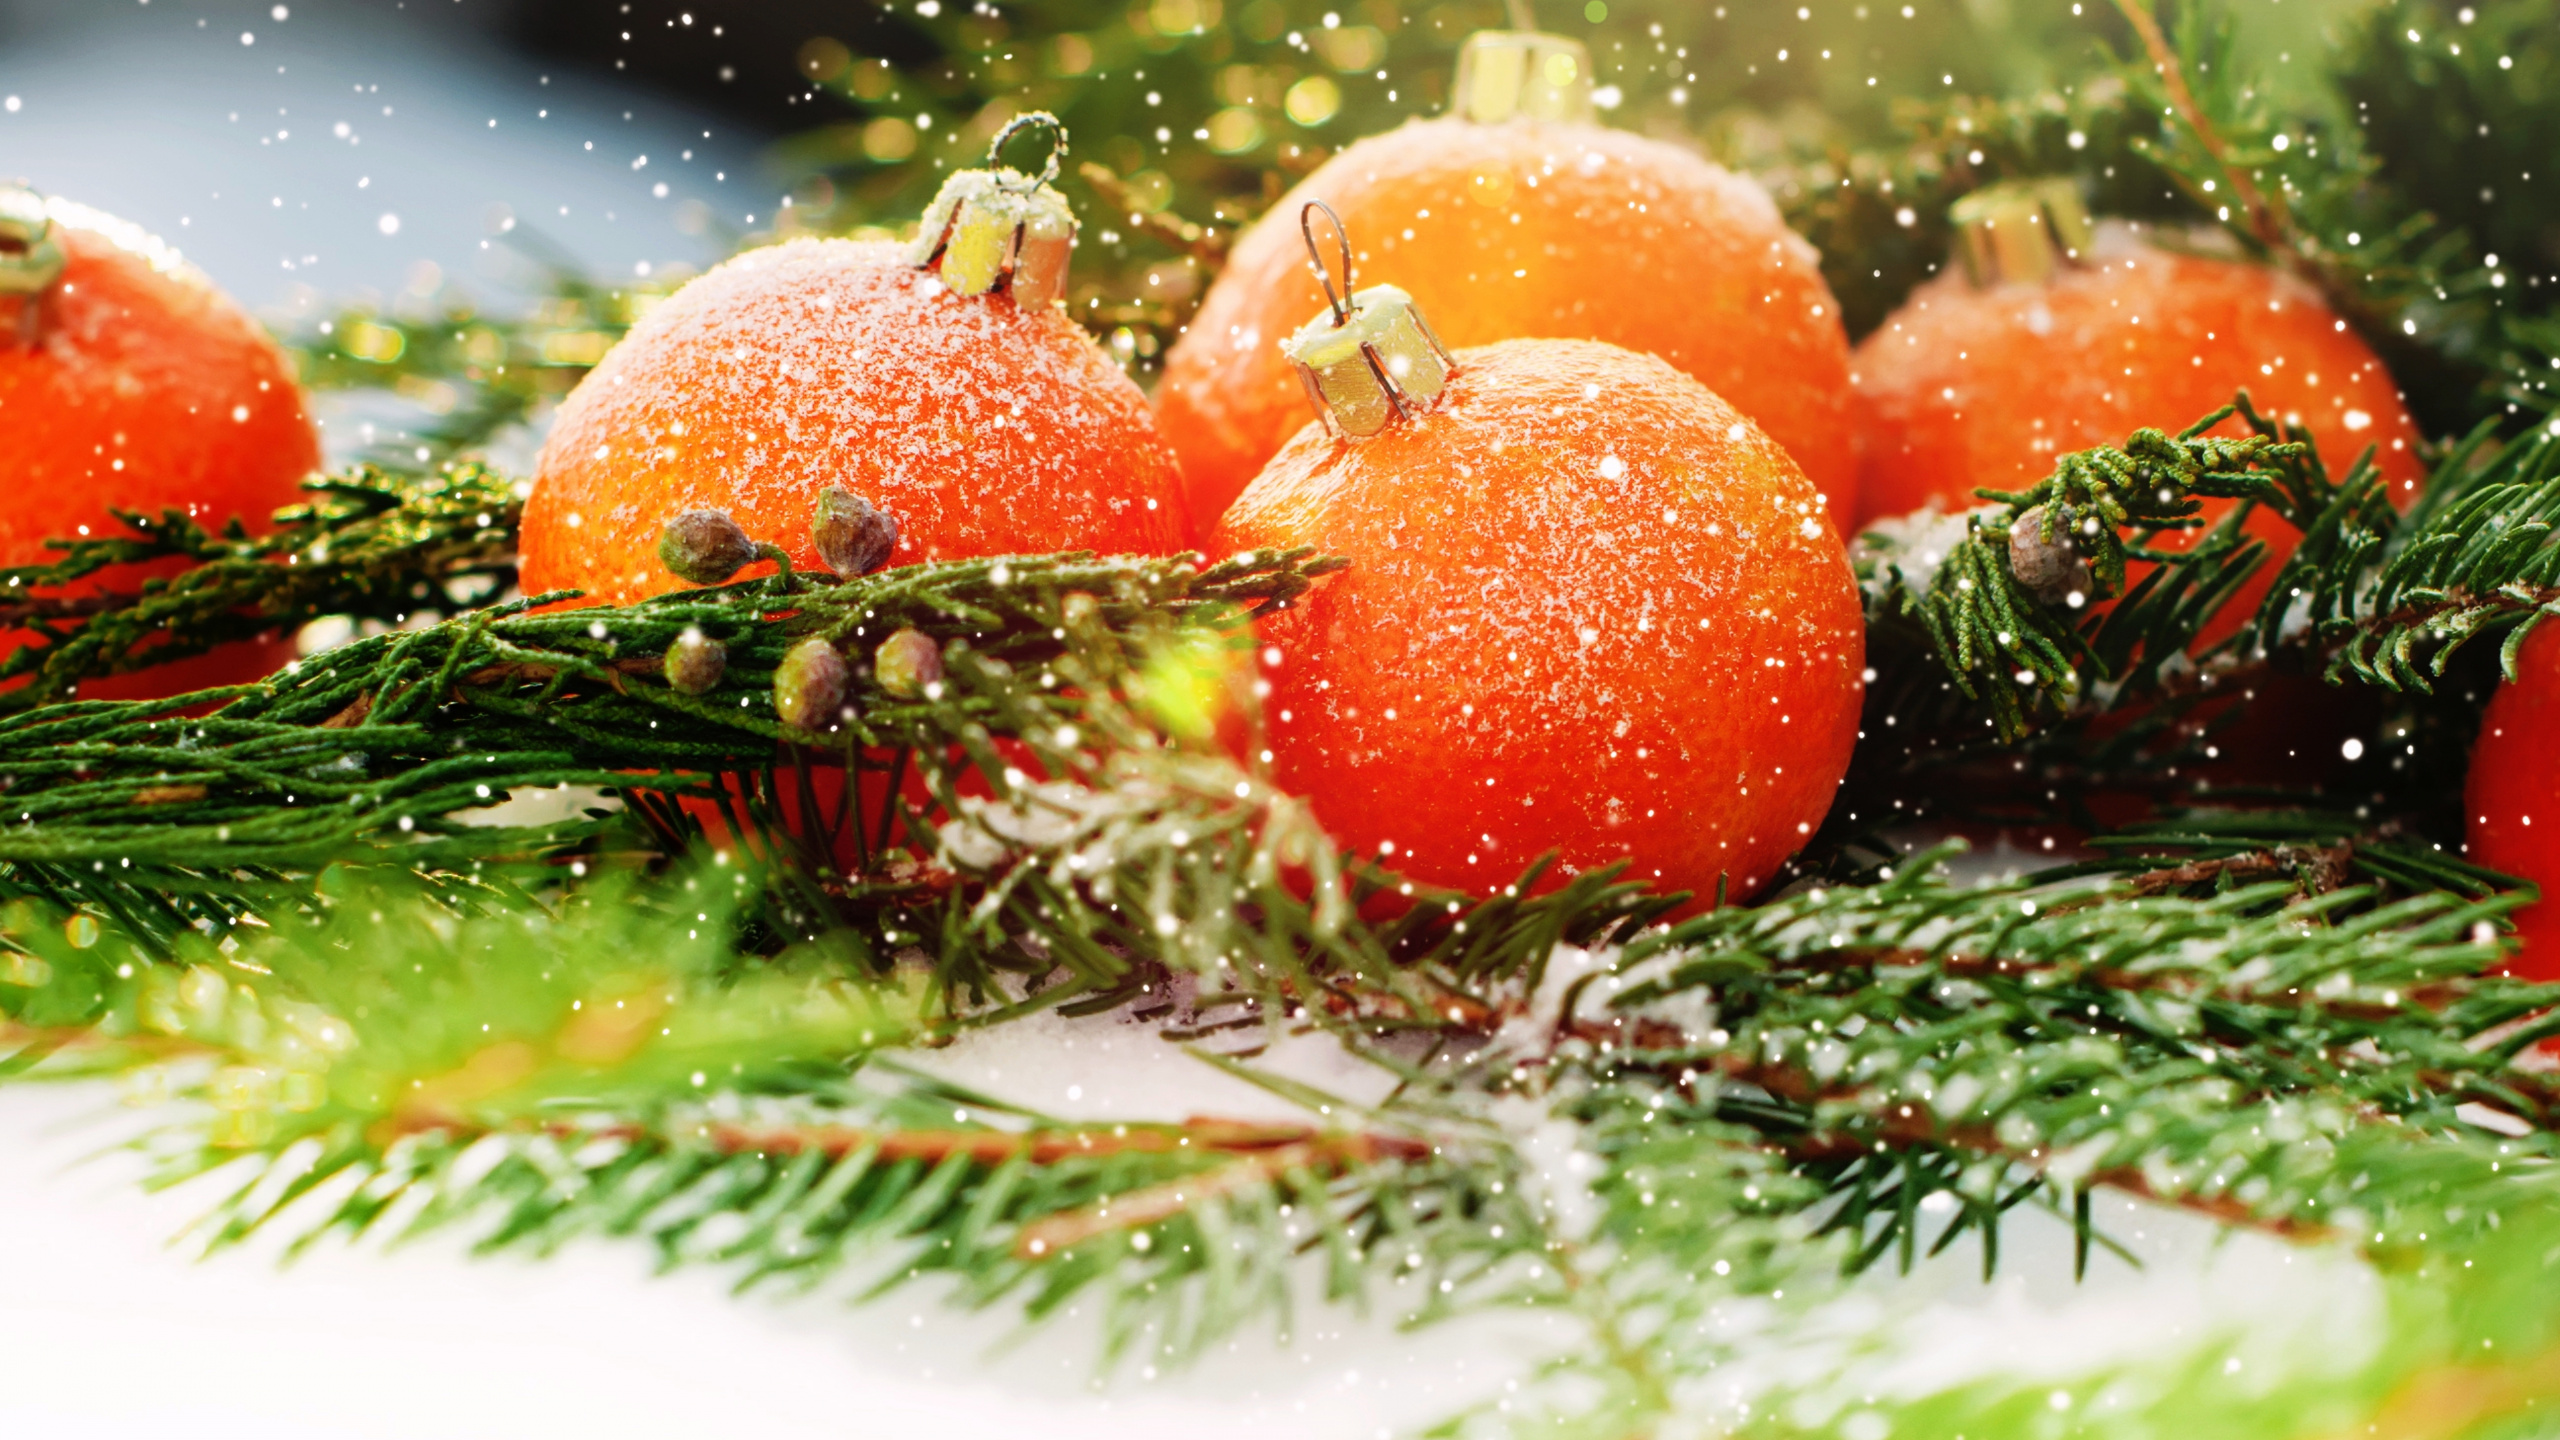 圣诞节那天, 新的一年, 食品, 天然的食物, 副执行主任莫罗兹 壁纸 2560x1440 允许